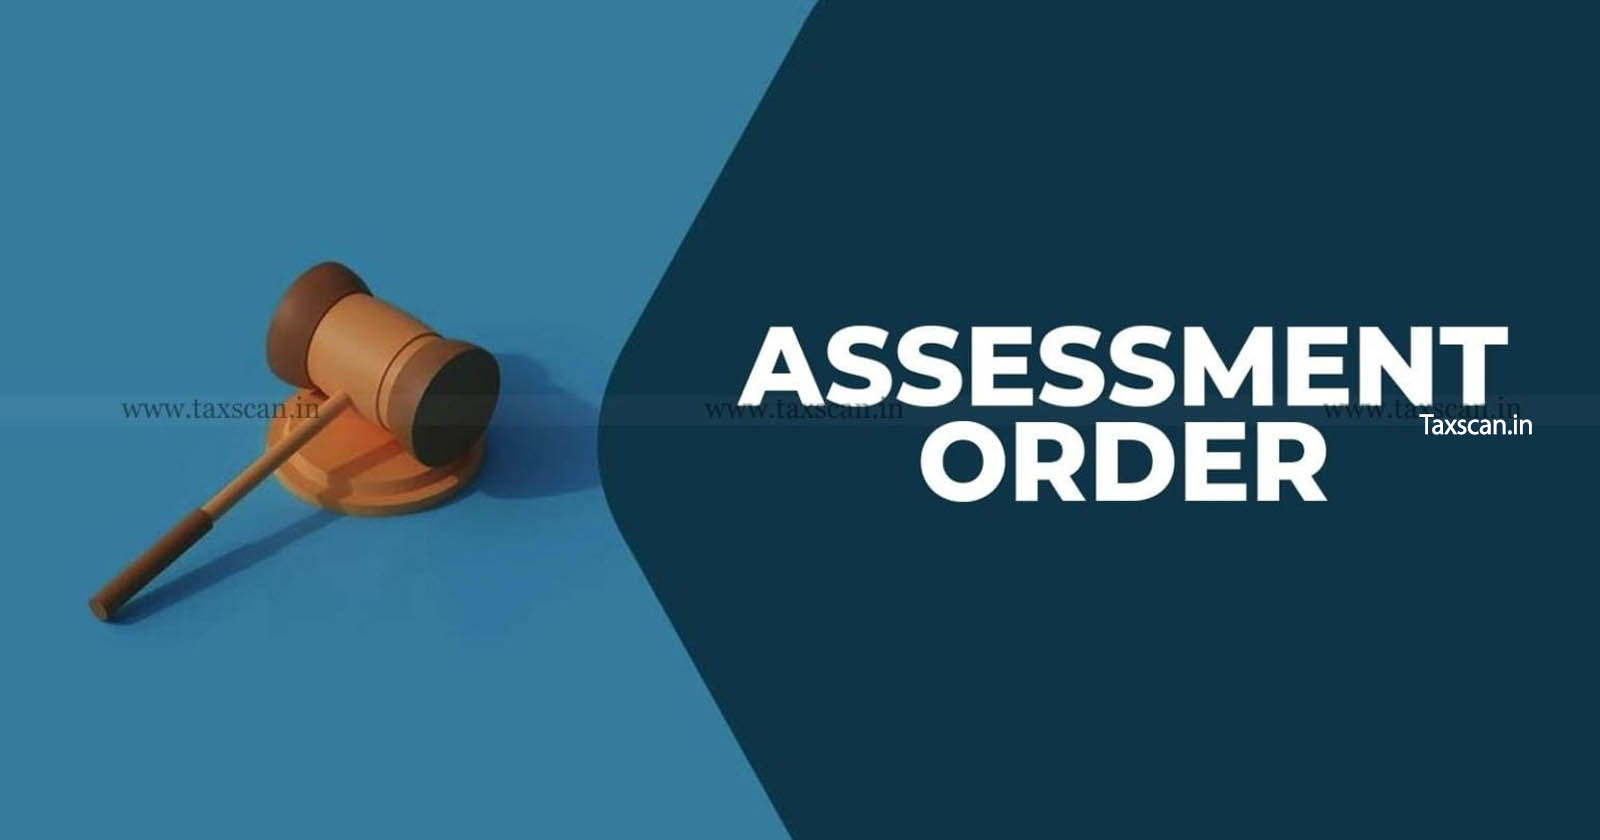 ITAT - ITAT Delhi - Income Tax - Assessment order - Draft Assessment Order - Tax assessment order issues - taxscan